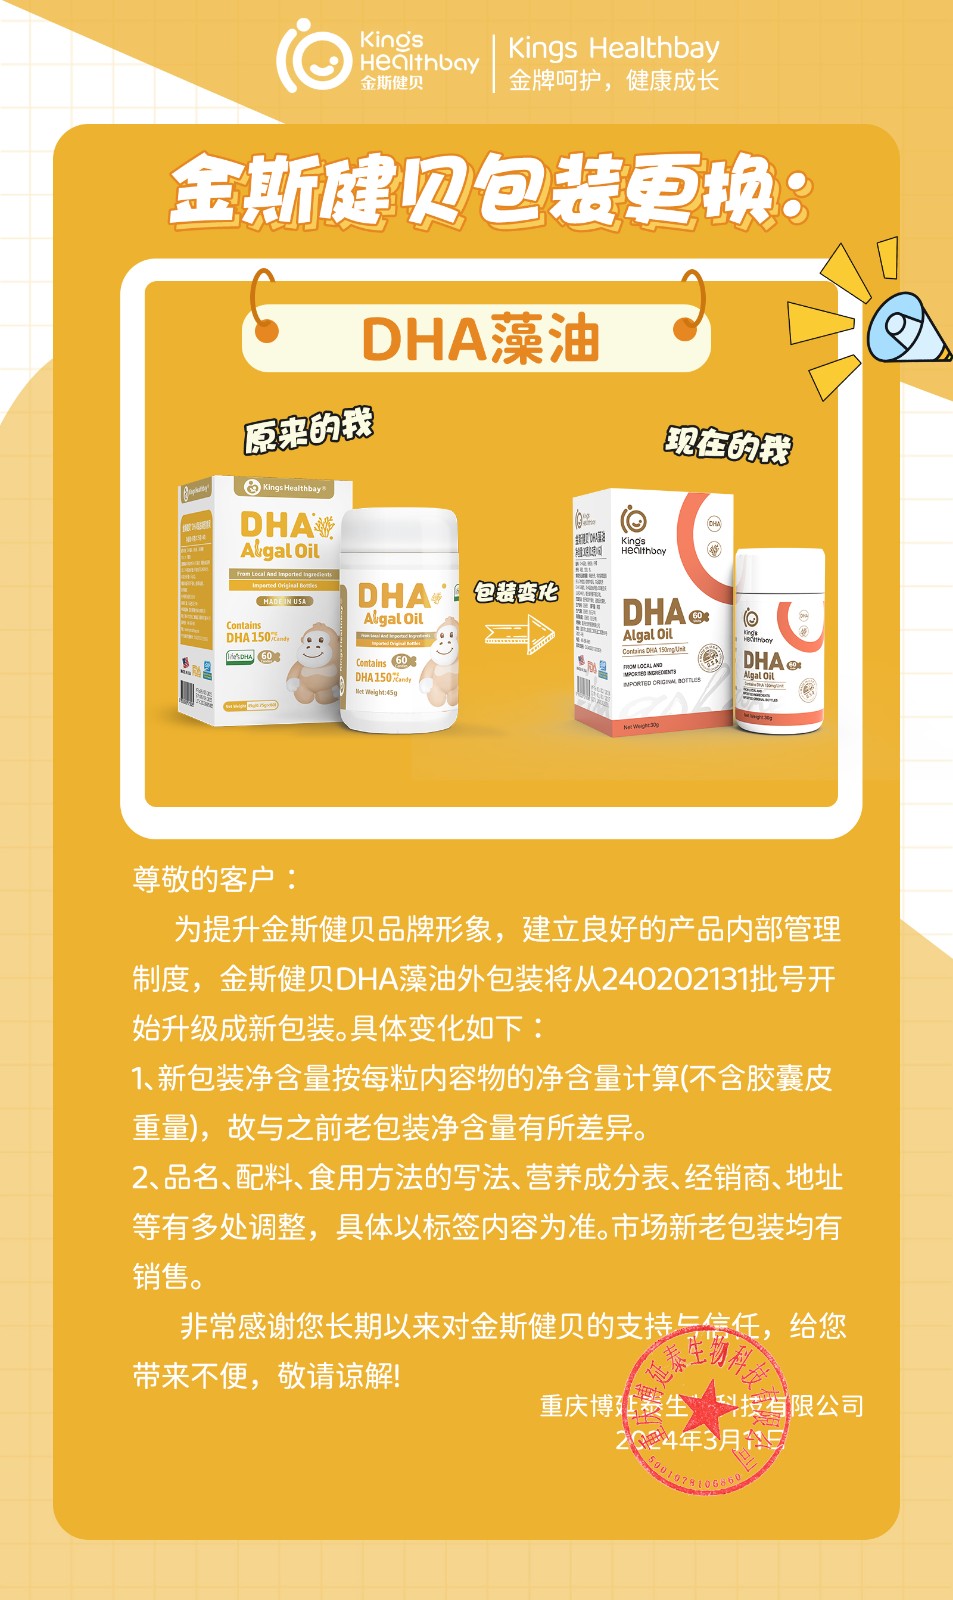 关于“DHA藻油”包装更换通知